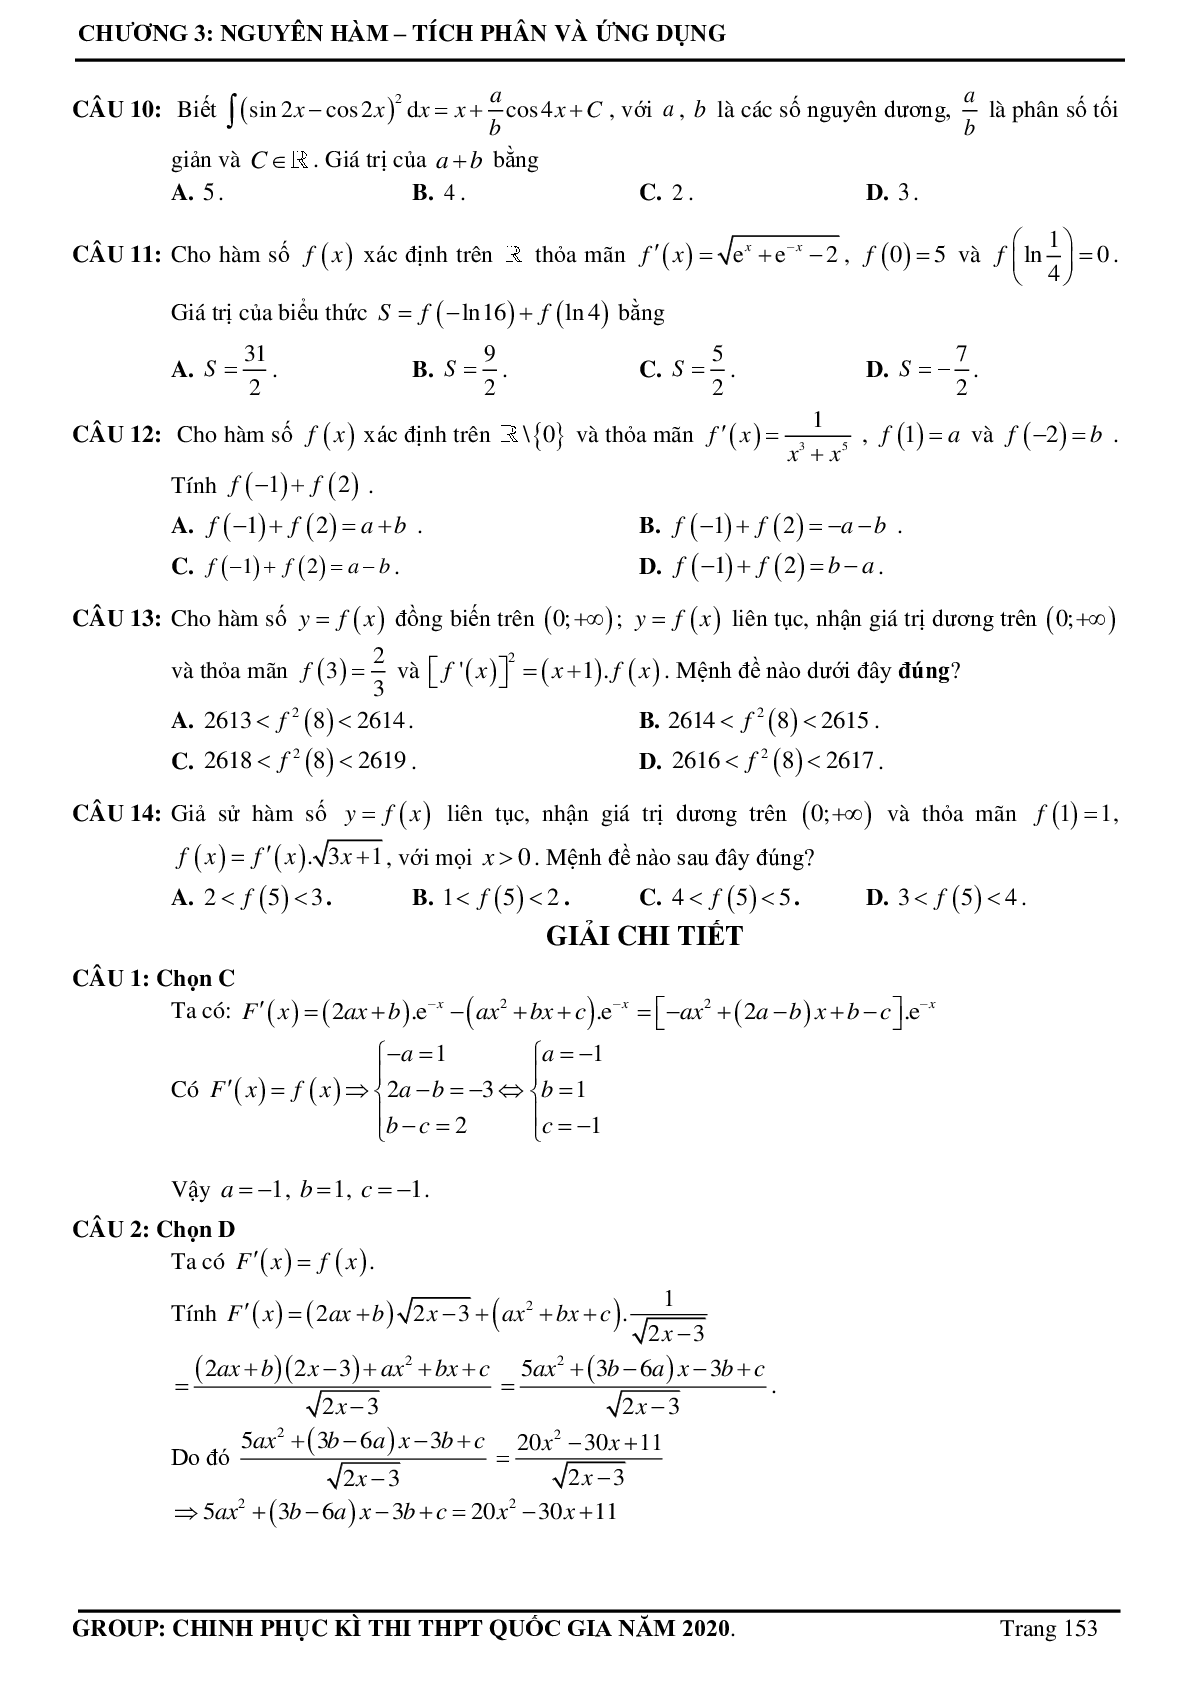 Tuyển chọn các bài toán Nguyên hàm - Tích phân Vận dụng cao thường xuất hiện trong đề thi - có đáp án chi tiết (trang 4)